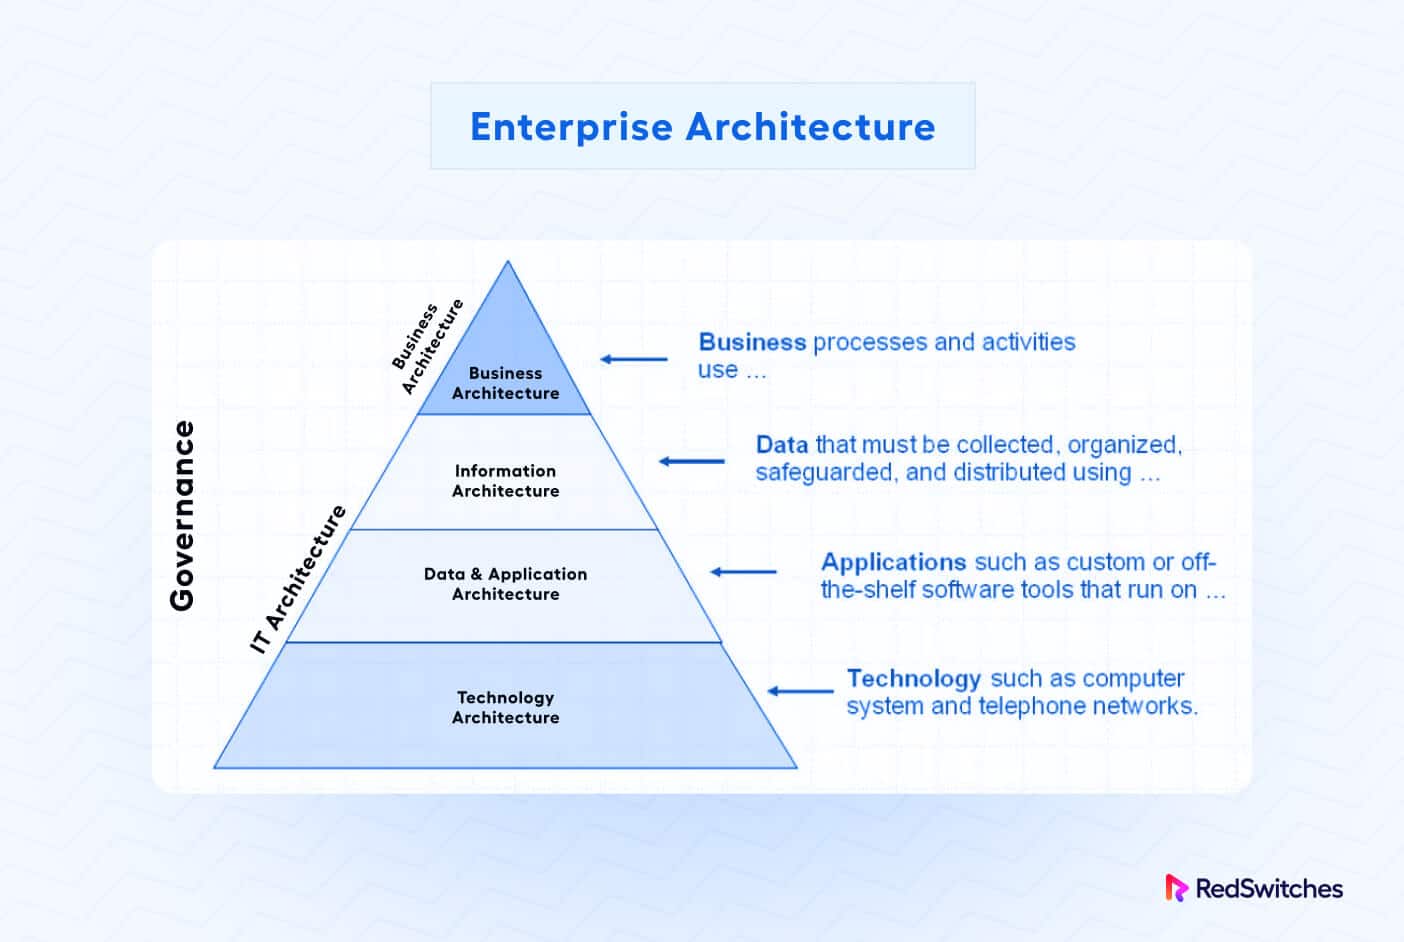 Enterprise Architecture in IT architecture